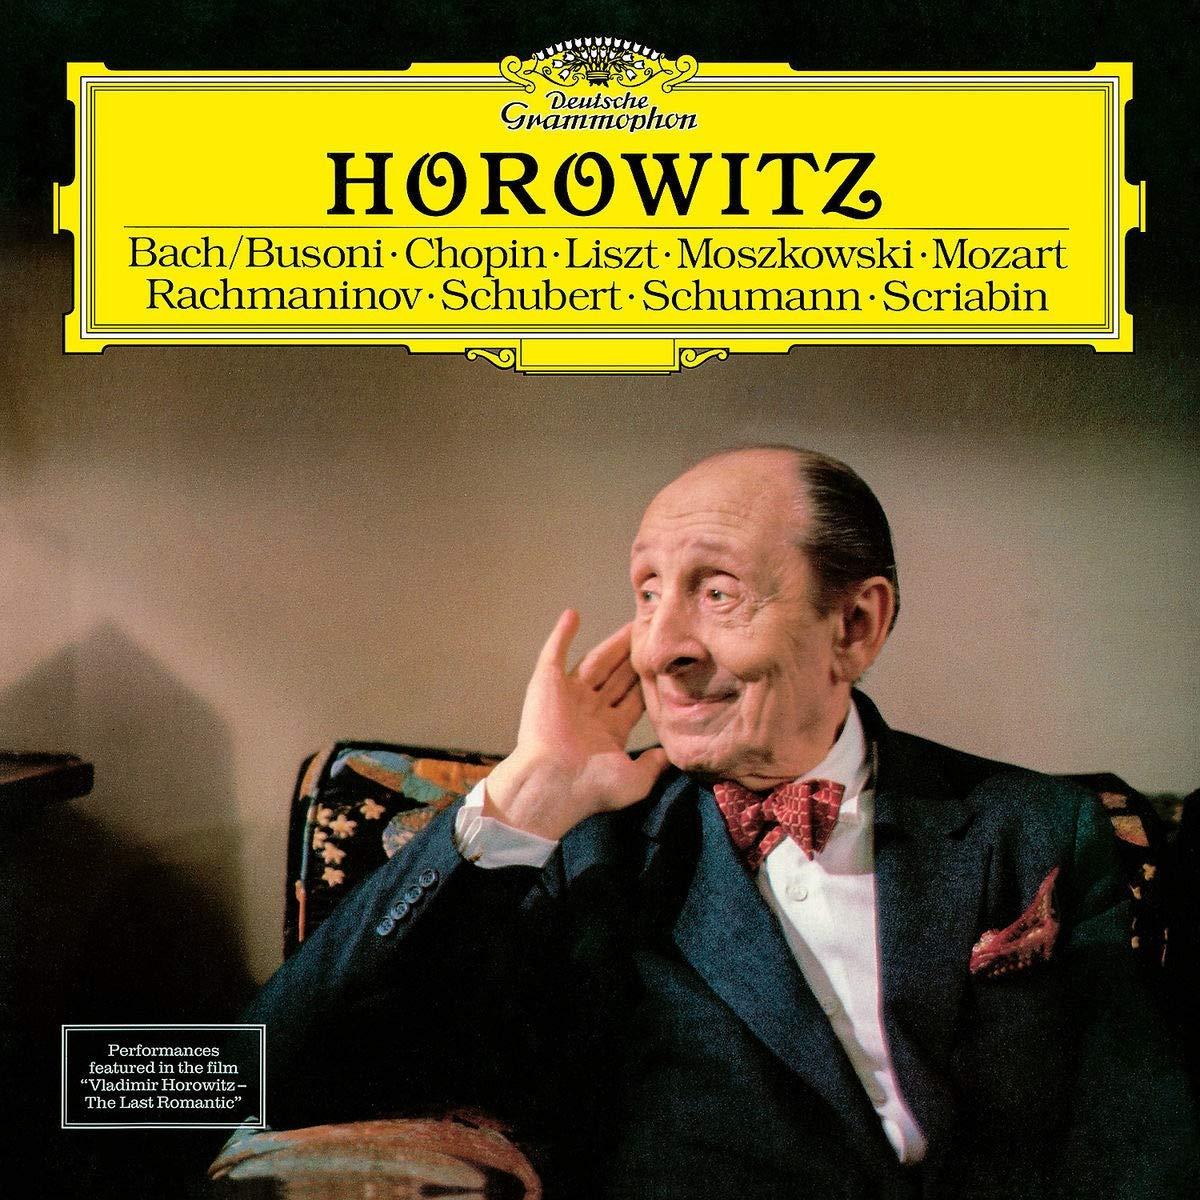 钢琴大师珍贵音乐会录像霍洛维茨在莫斯科1986